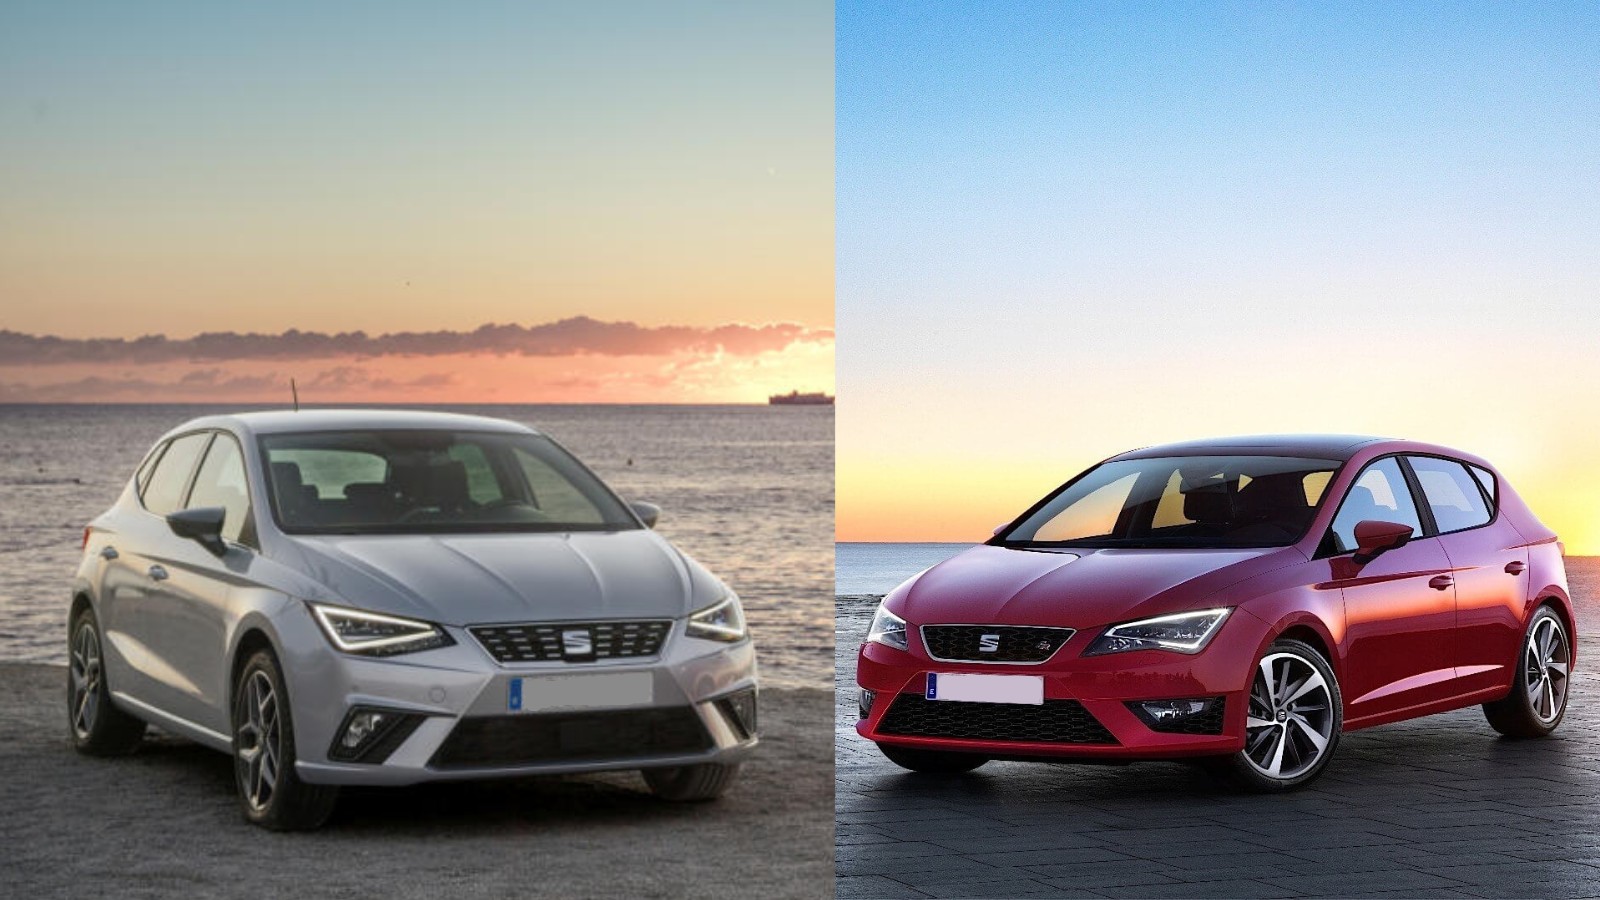 Comparativa entre SEAT Ibiza vs SEAT León